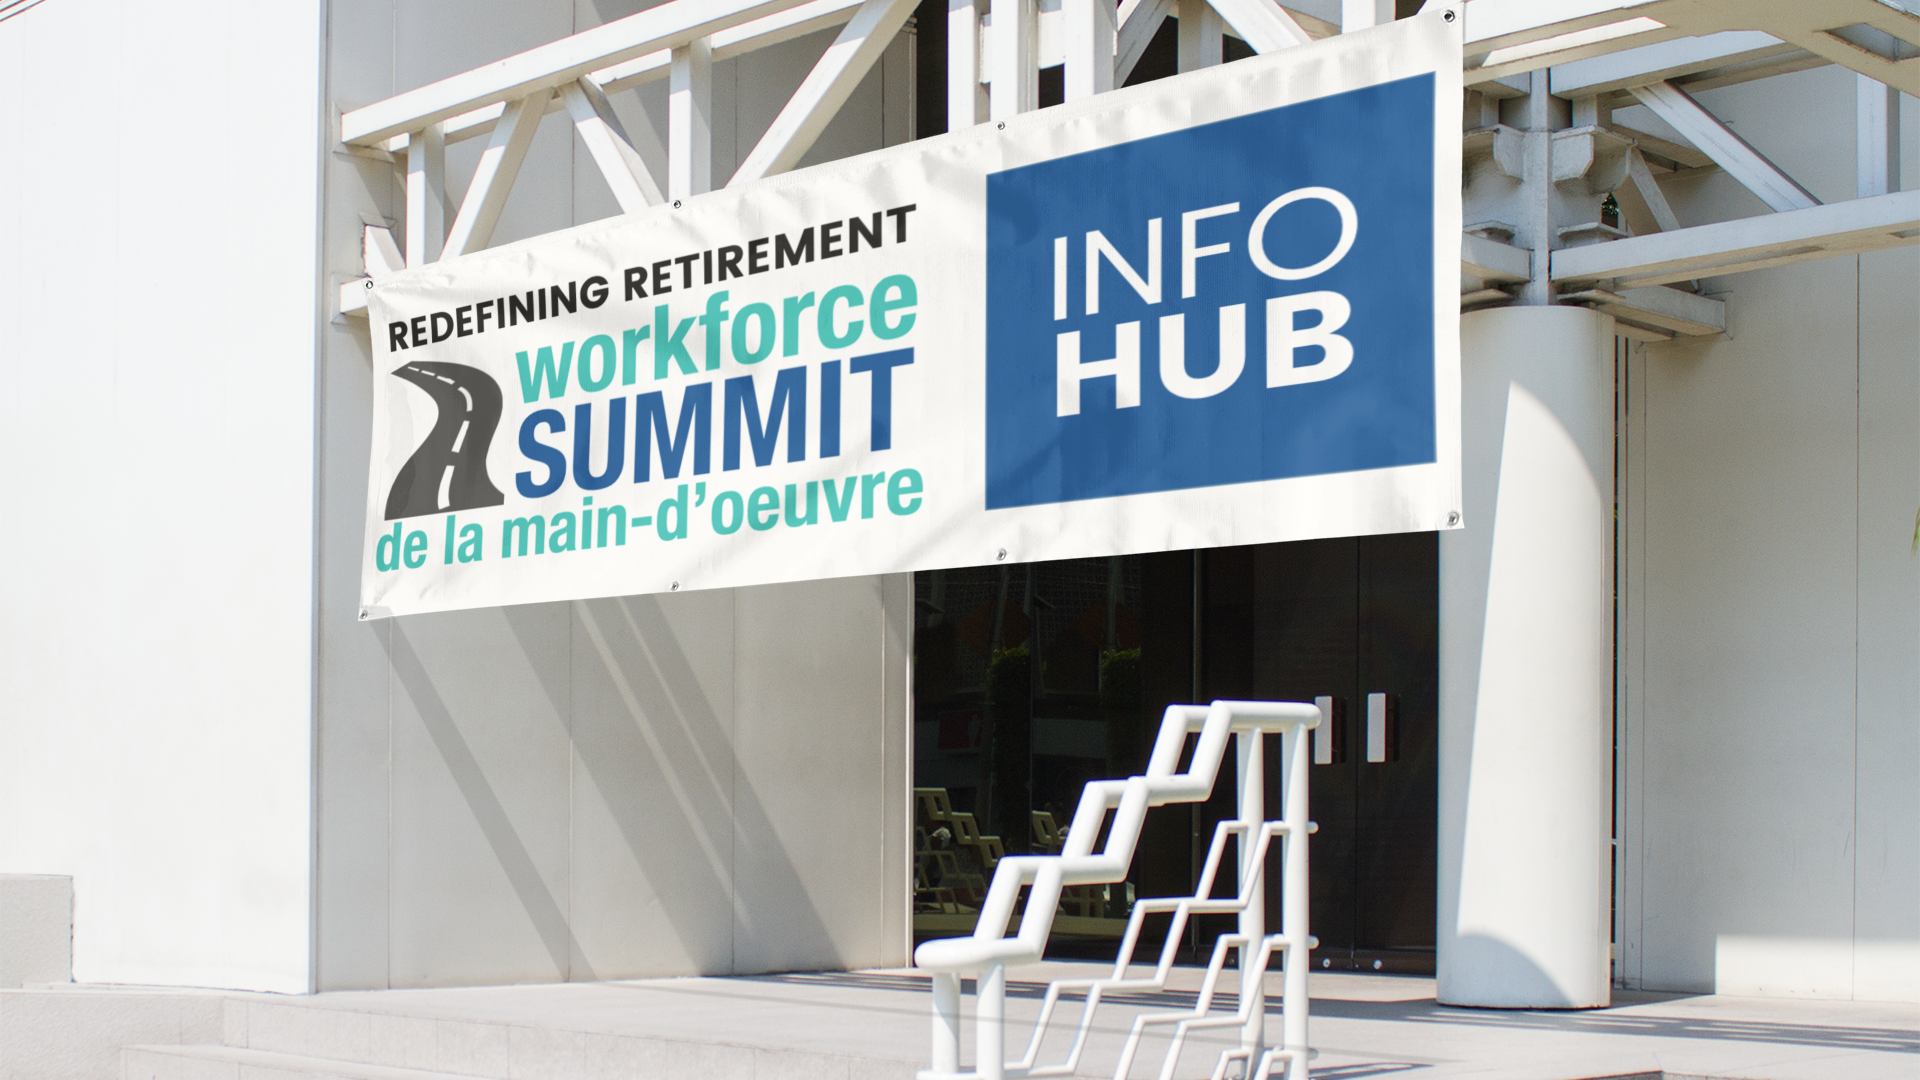 Redefining Retirement Workforce Summit Info Hub